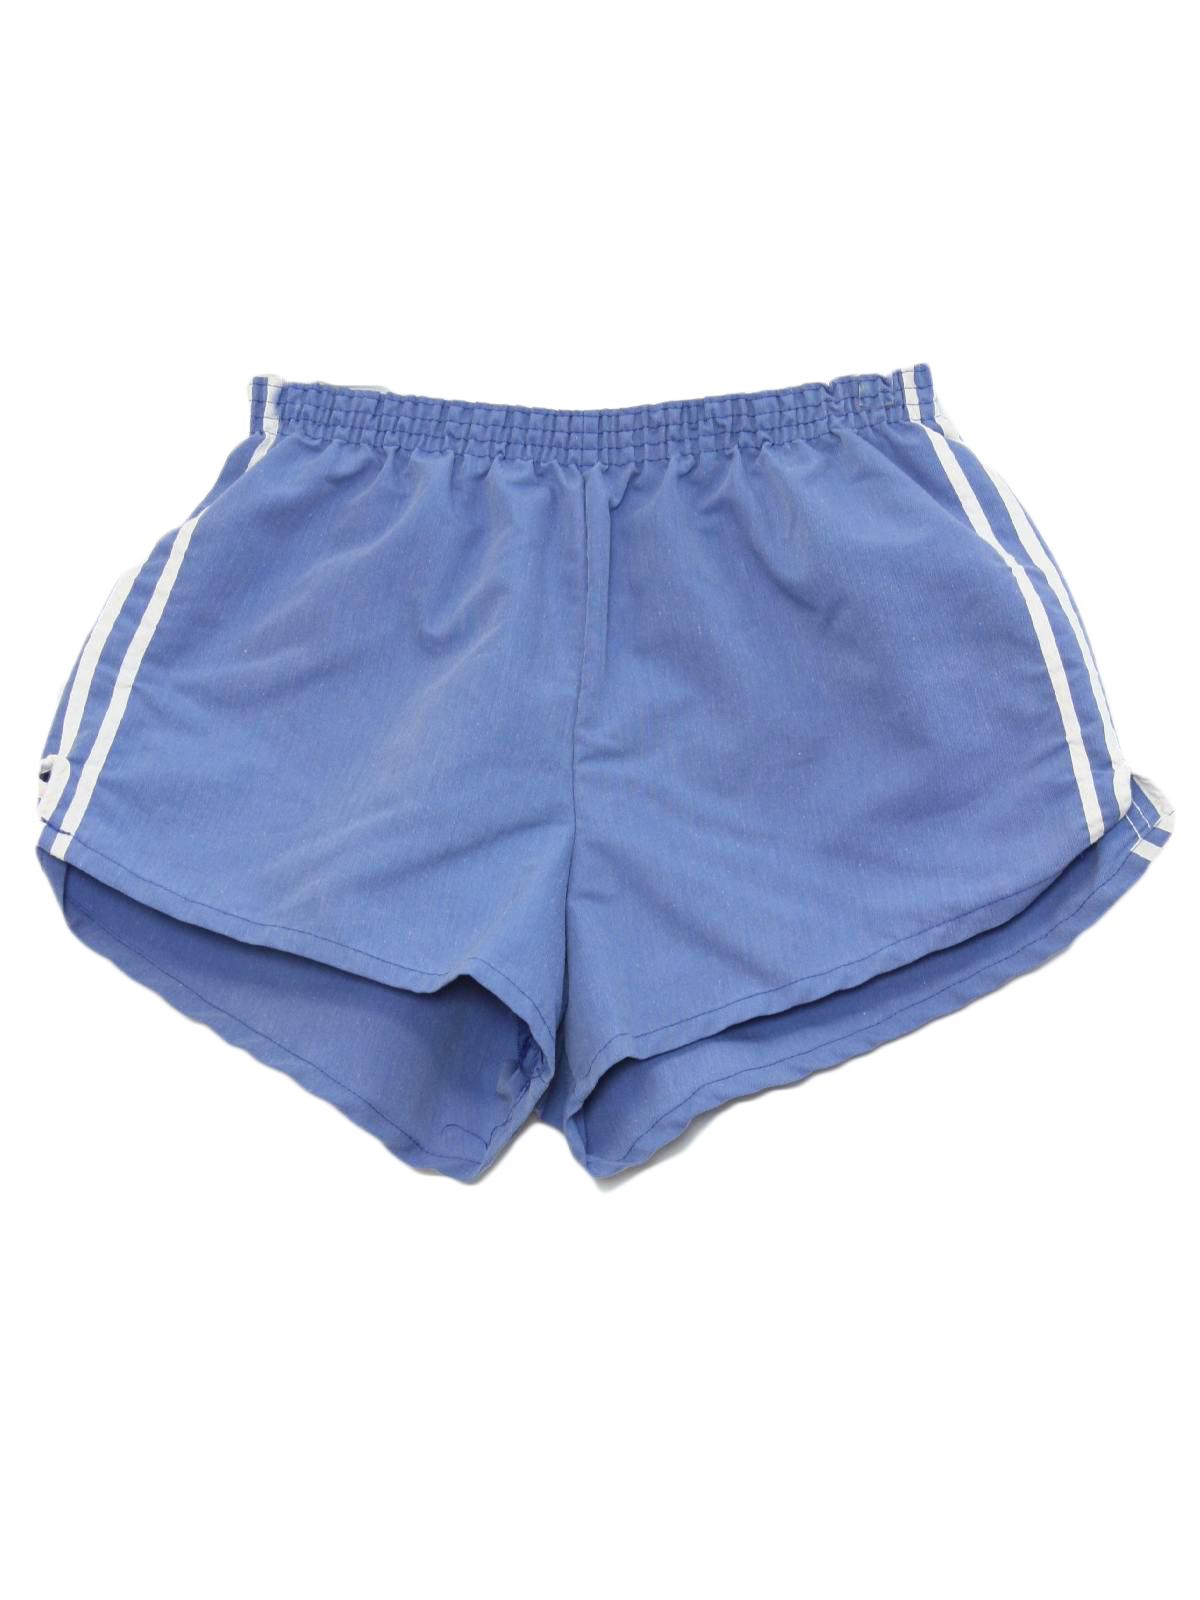 Retro 80s Shorts (Pro Sports) : 80s -Pro Sports- Mens light blue ...